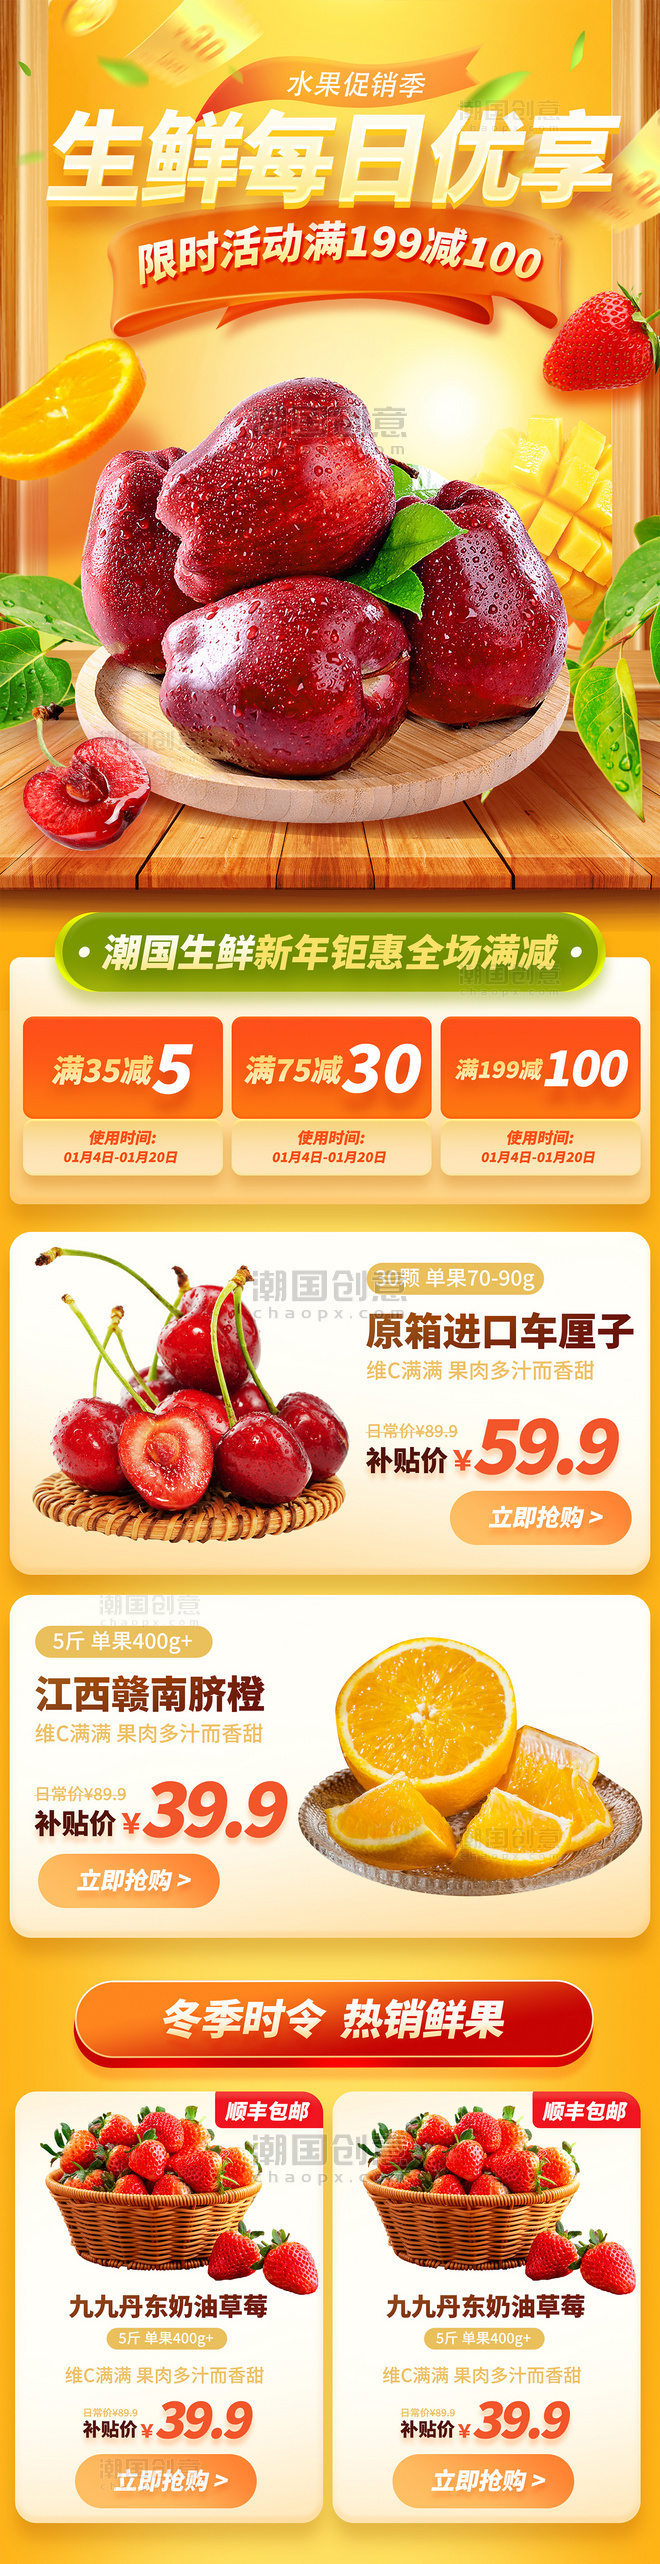 生鲜每日上新商超水果果蔬电商促销营销长图活动页